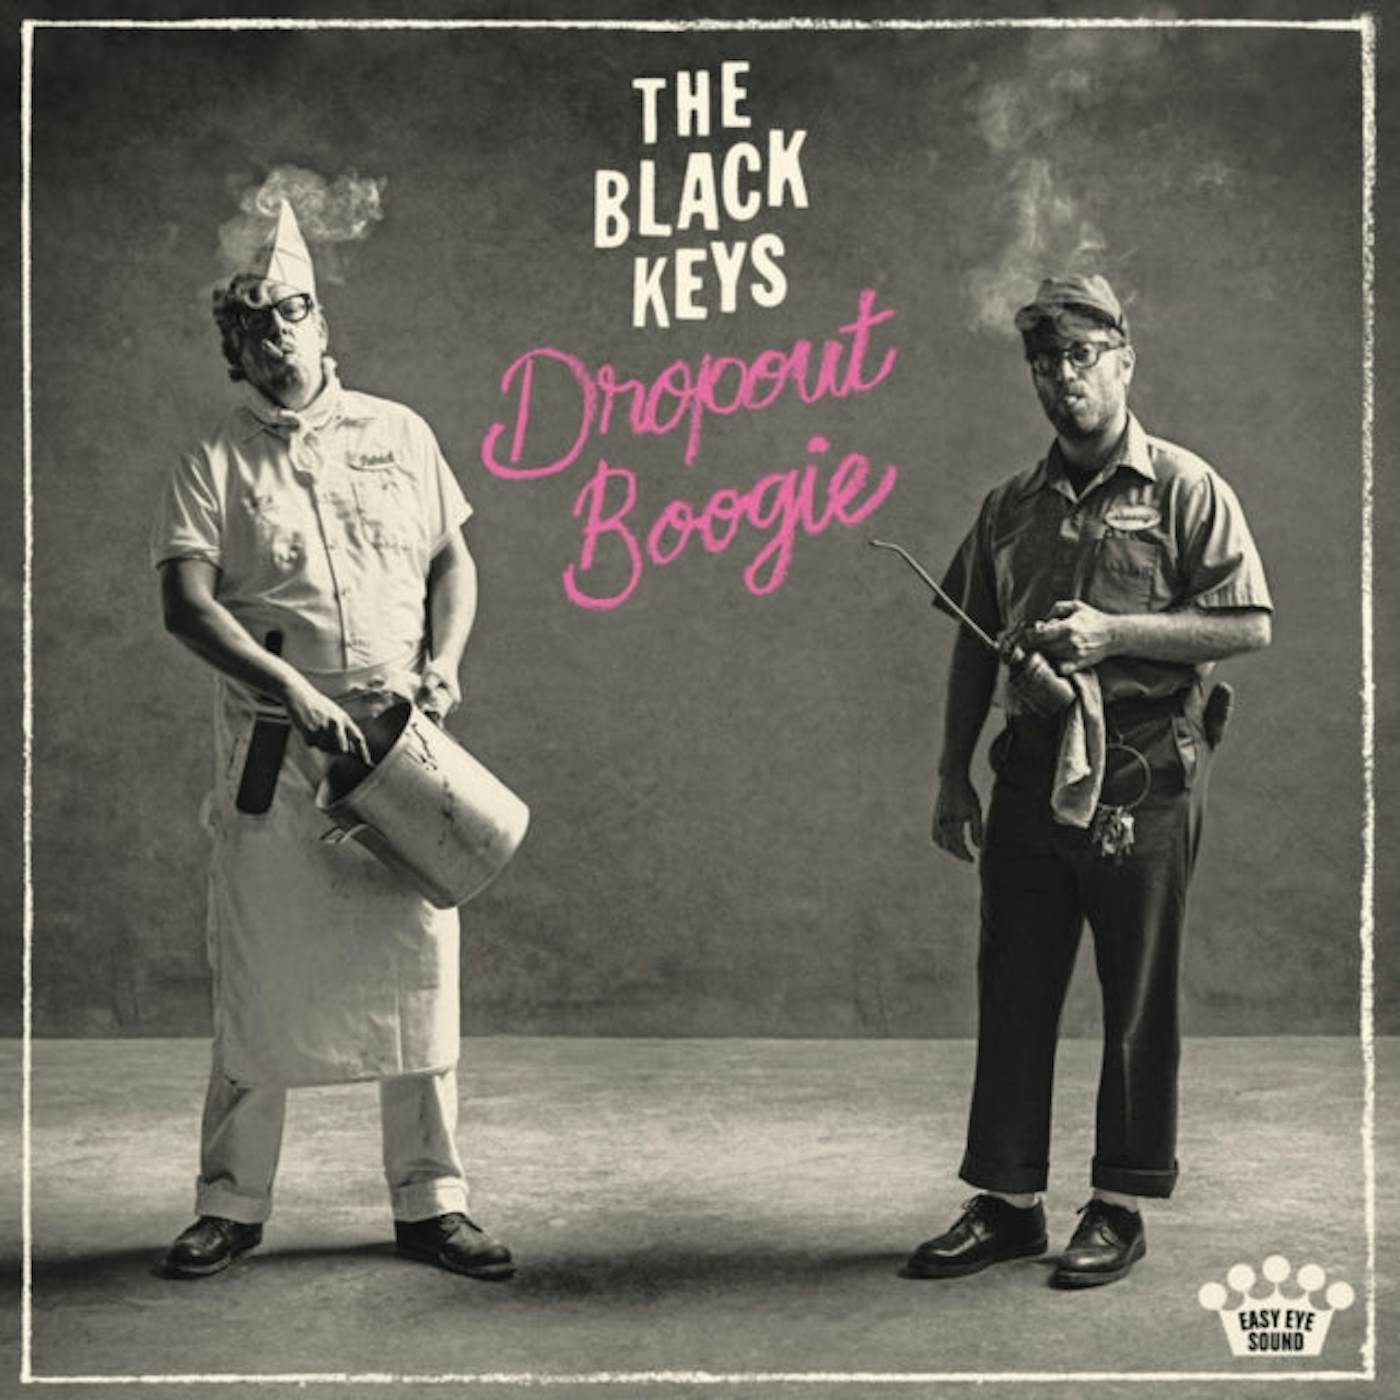 The Black Keys LP Vinyl Record - Dropout Boogie